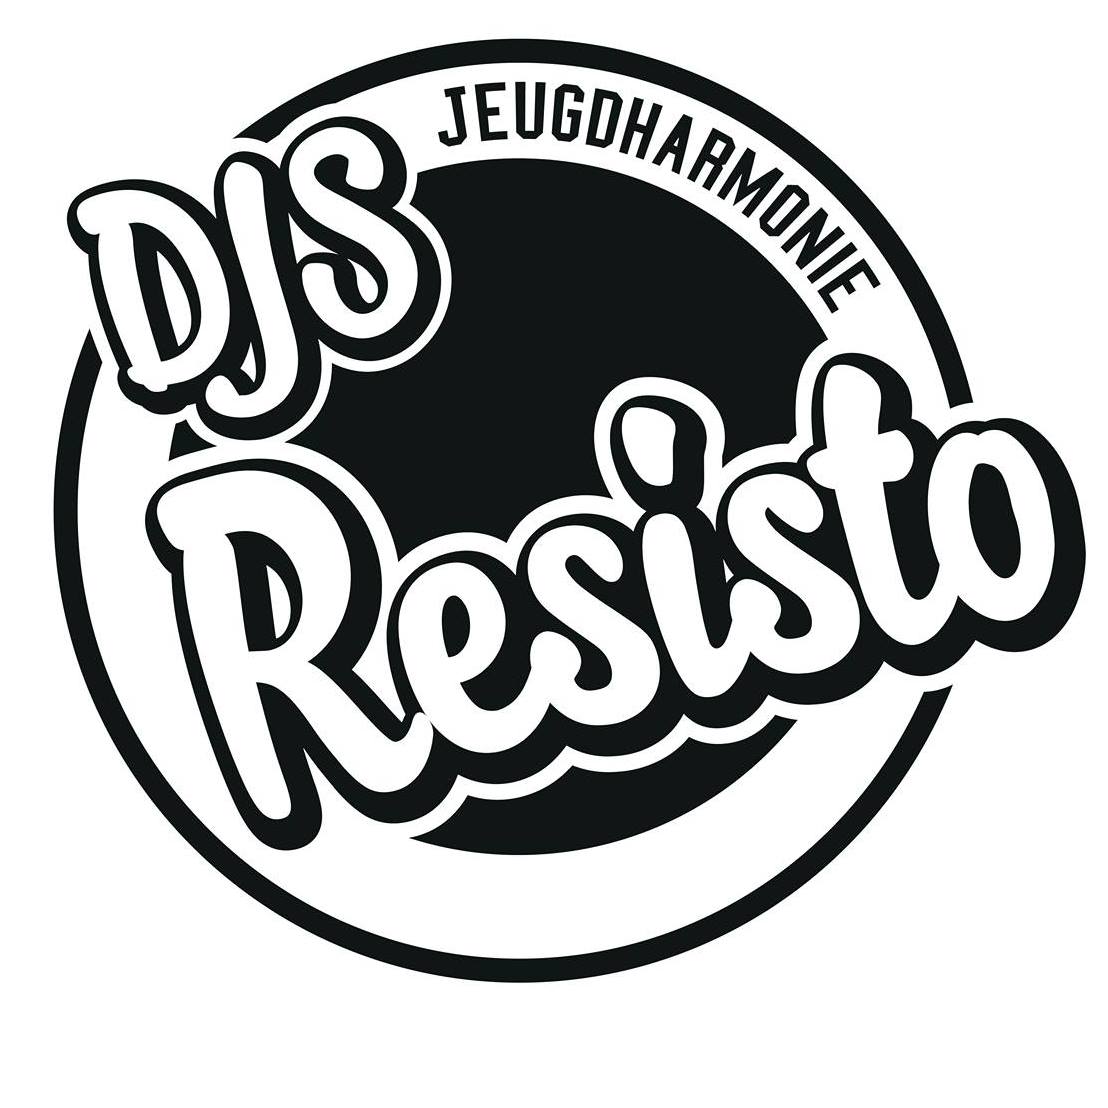 Jeugdharmonie DJS Resisto